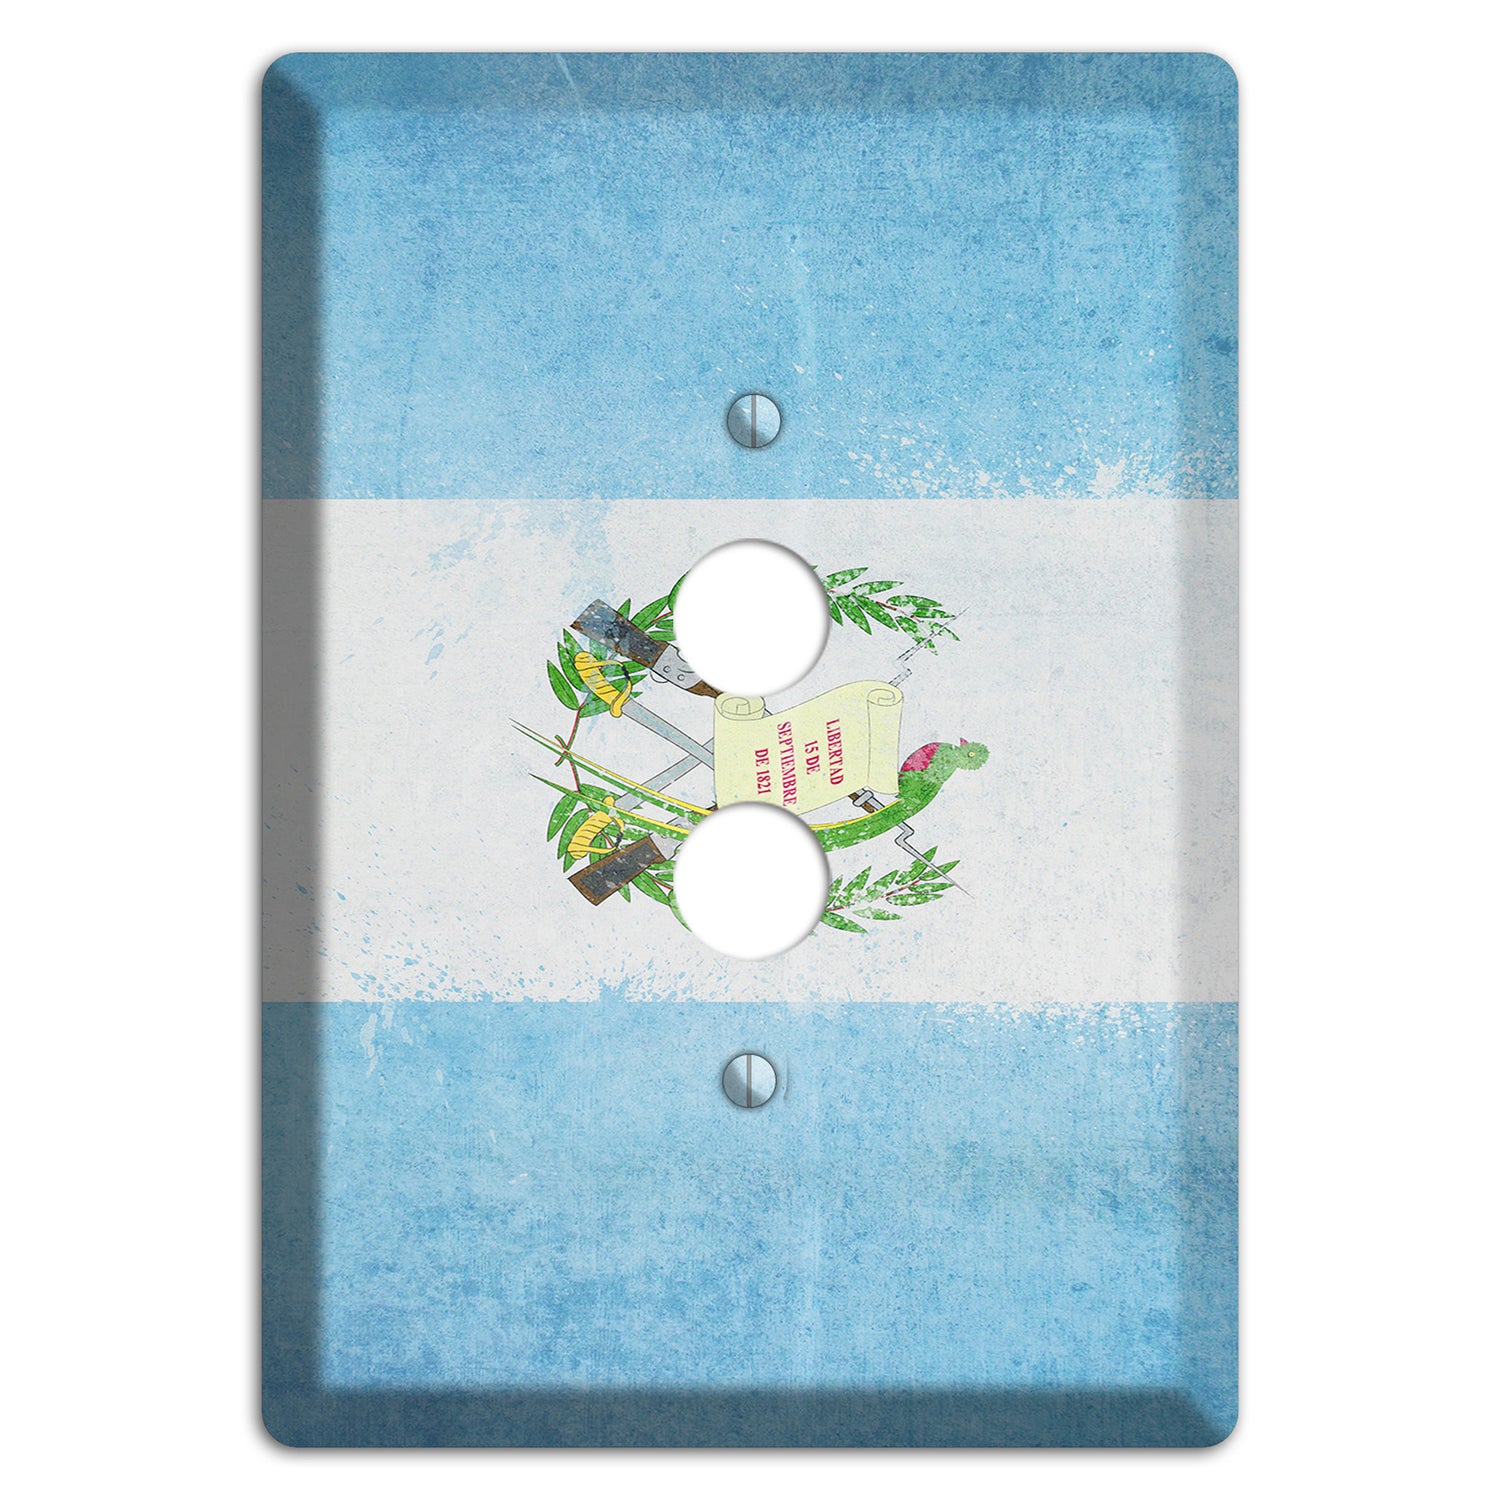 Guatemala Cover Plates 1 Pushbutton Wallplate